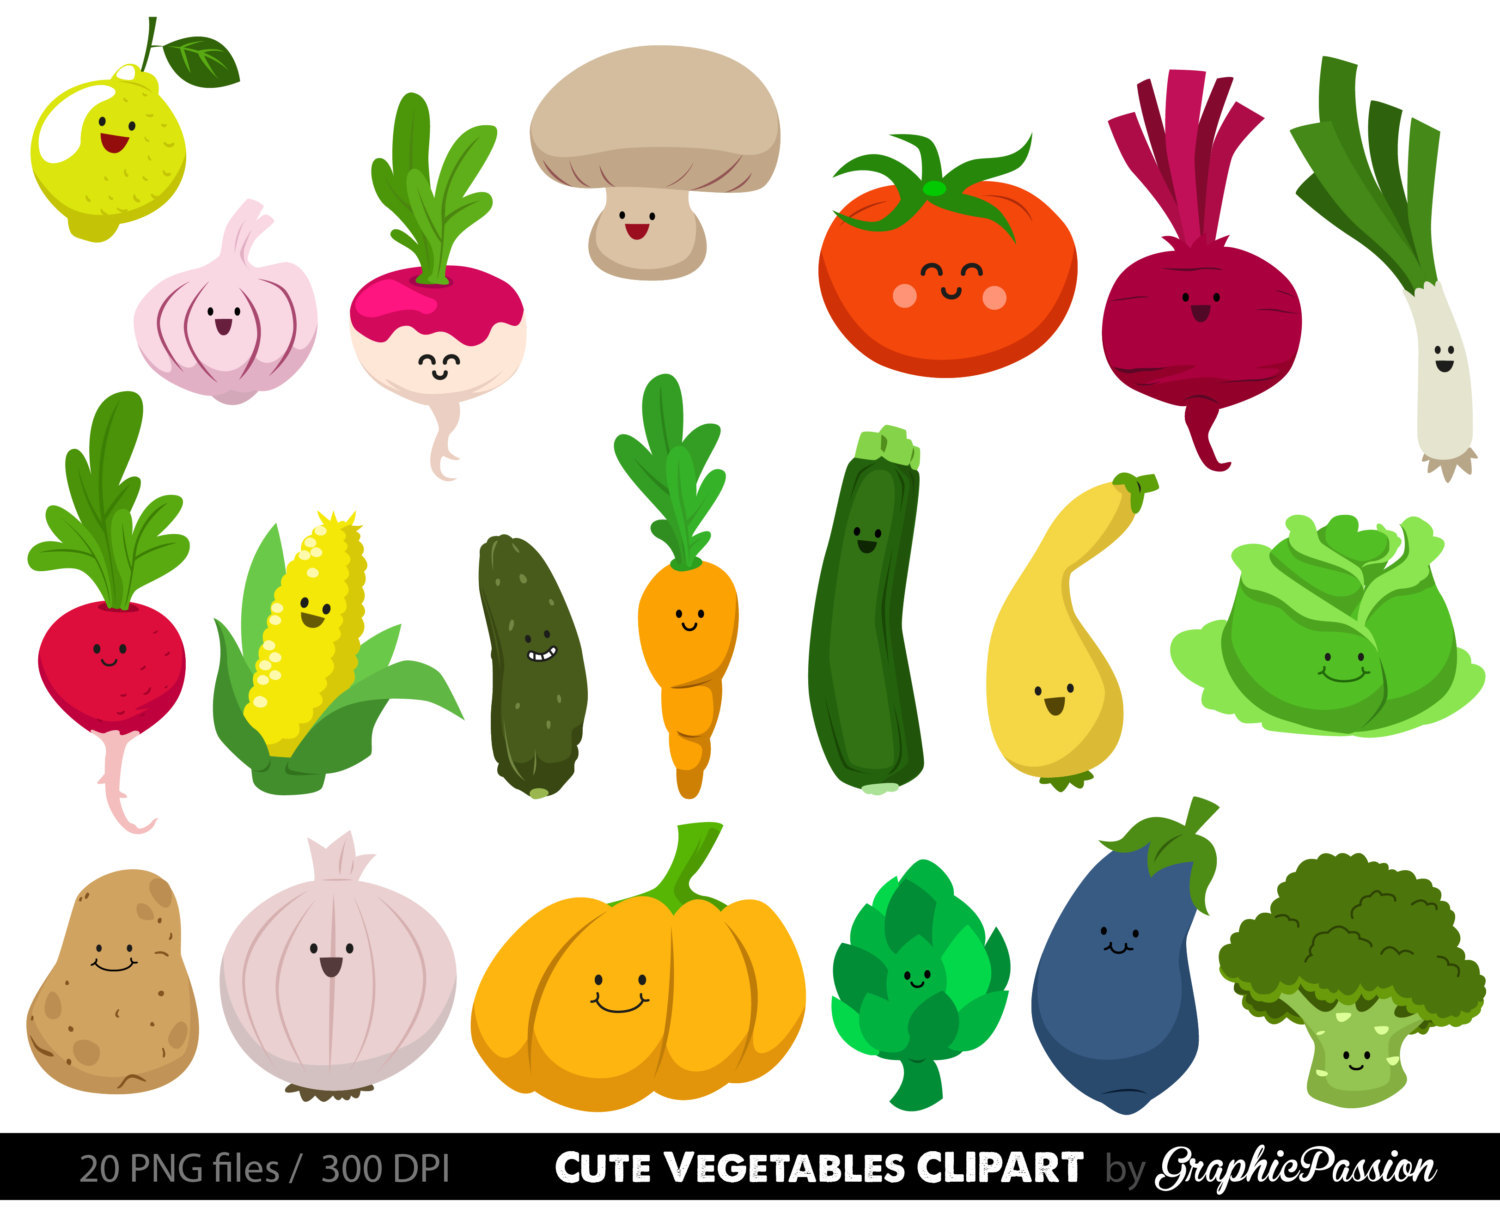 Cute vegetable clipart - Vegg